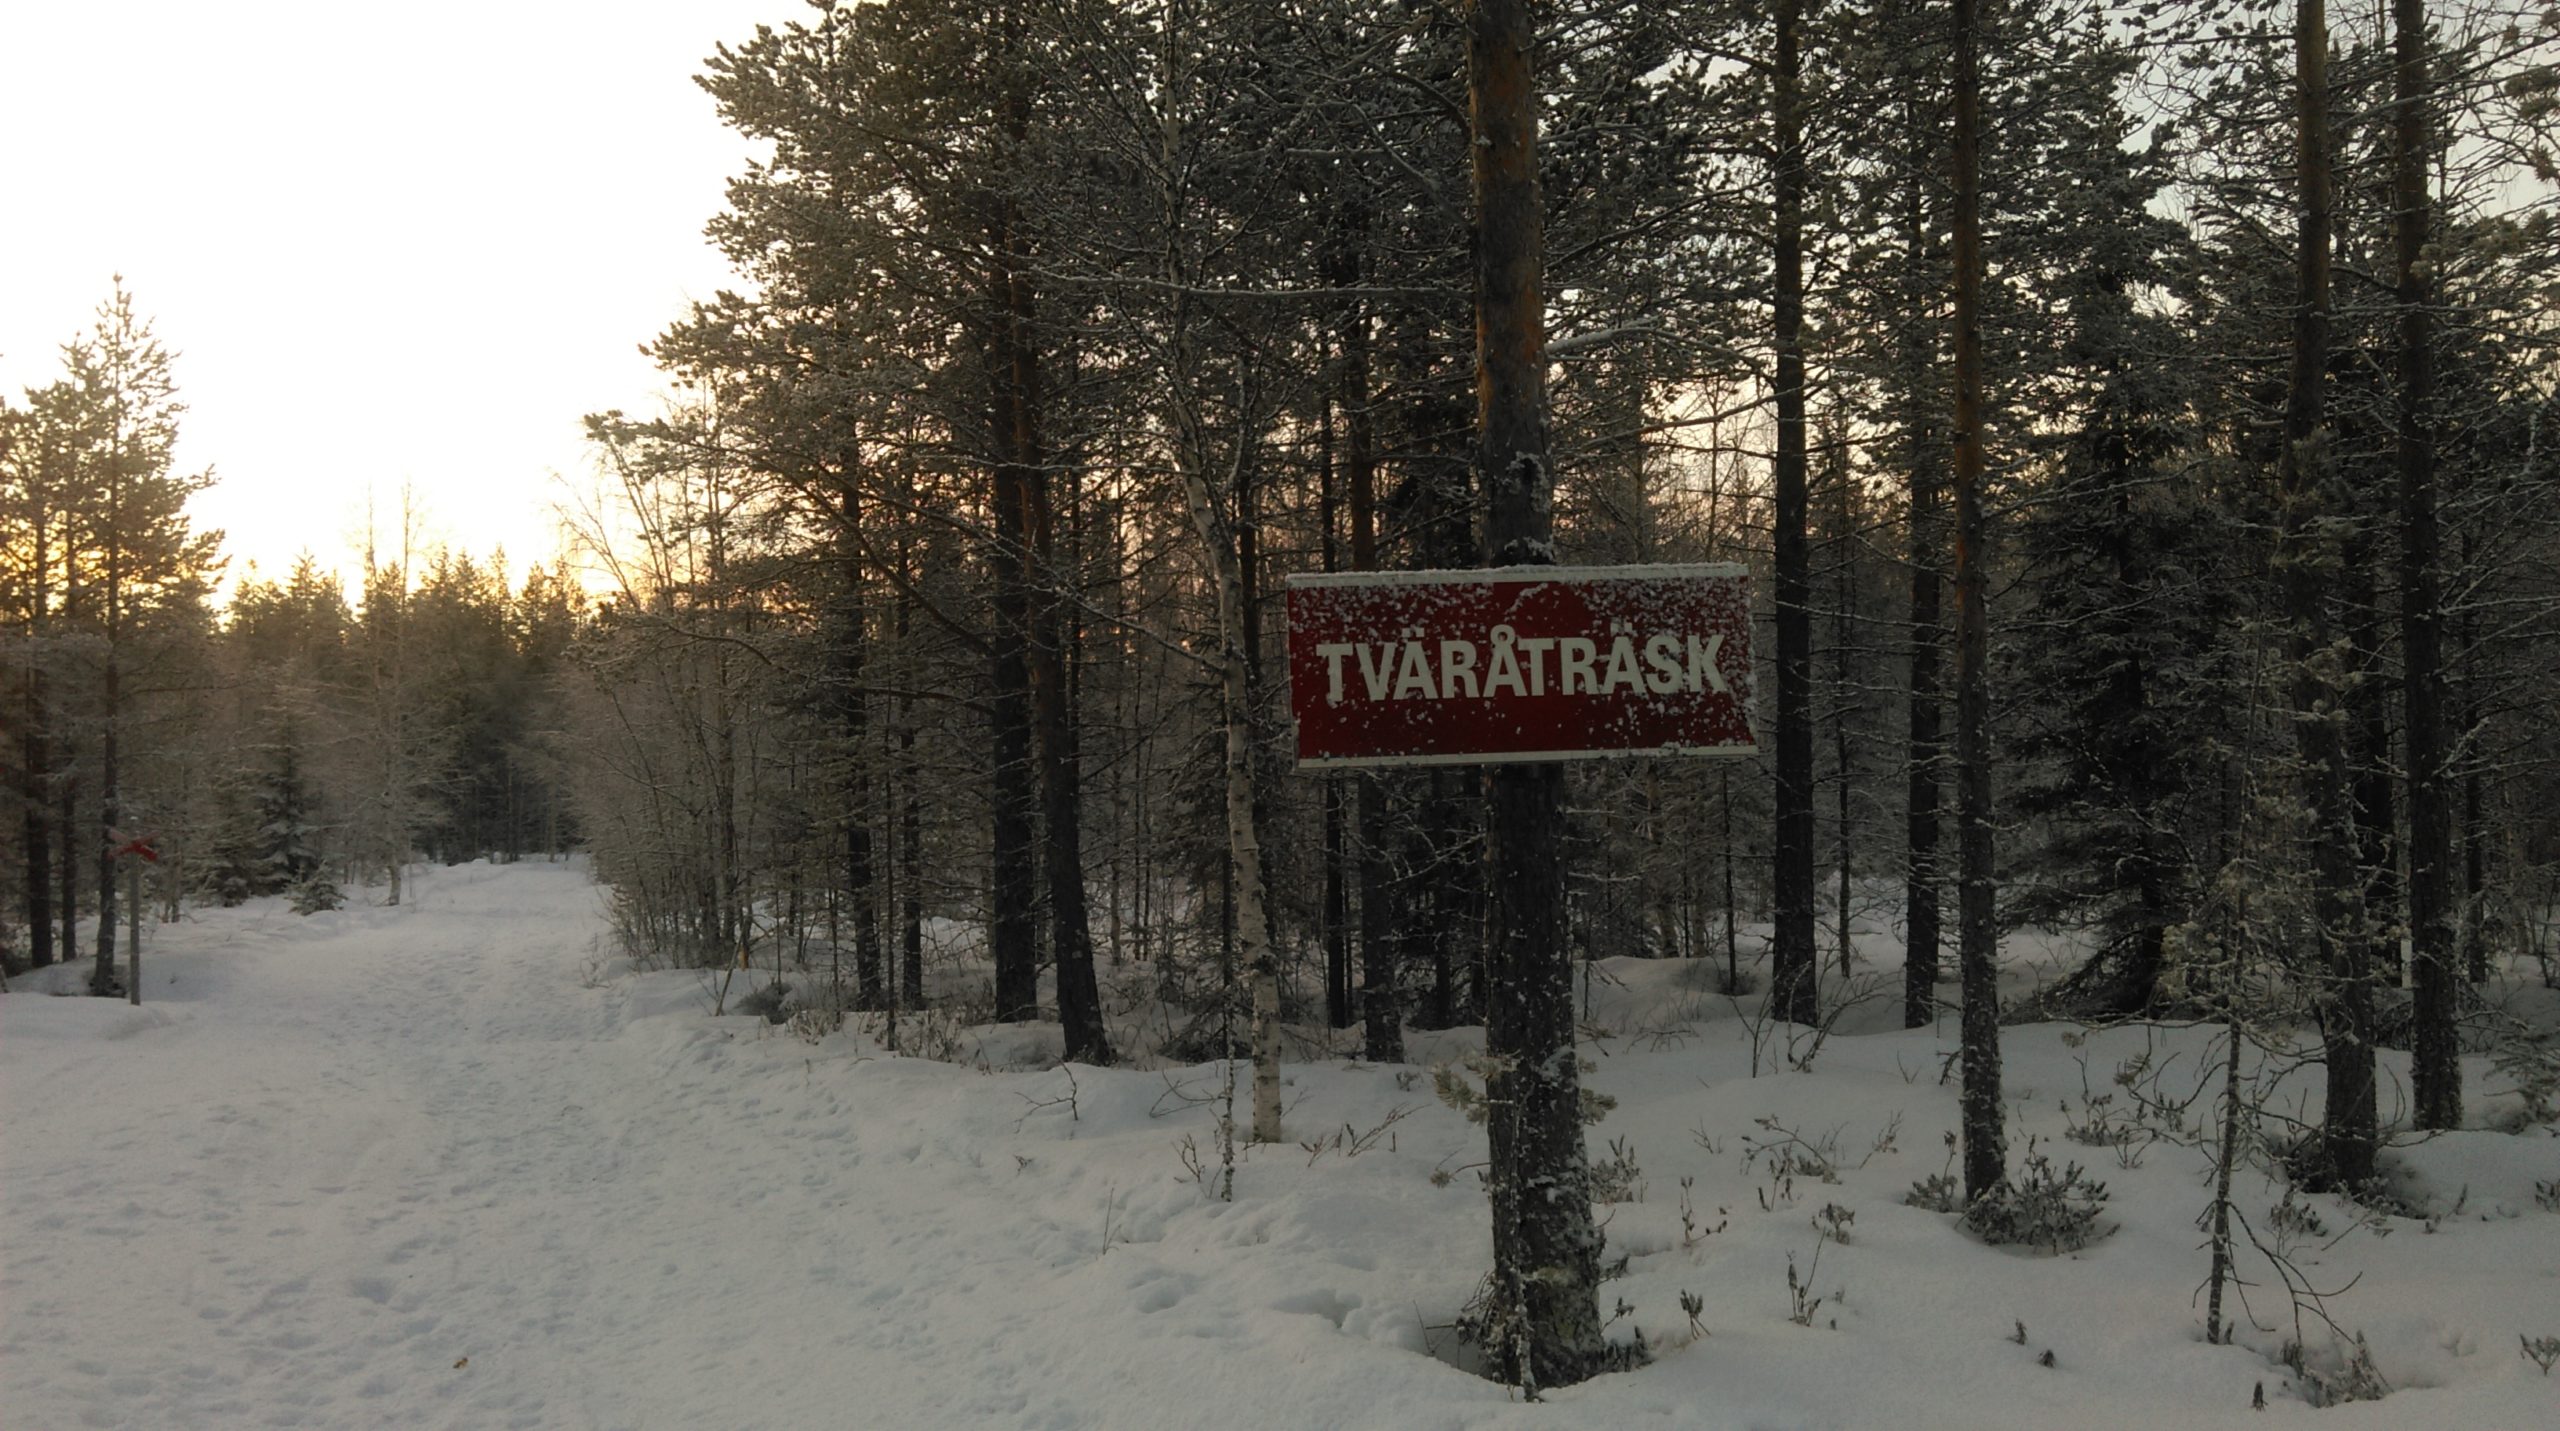 Sign for Village of Tväråträsk in Lapland, Sweden